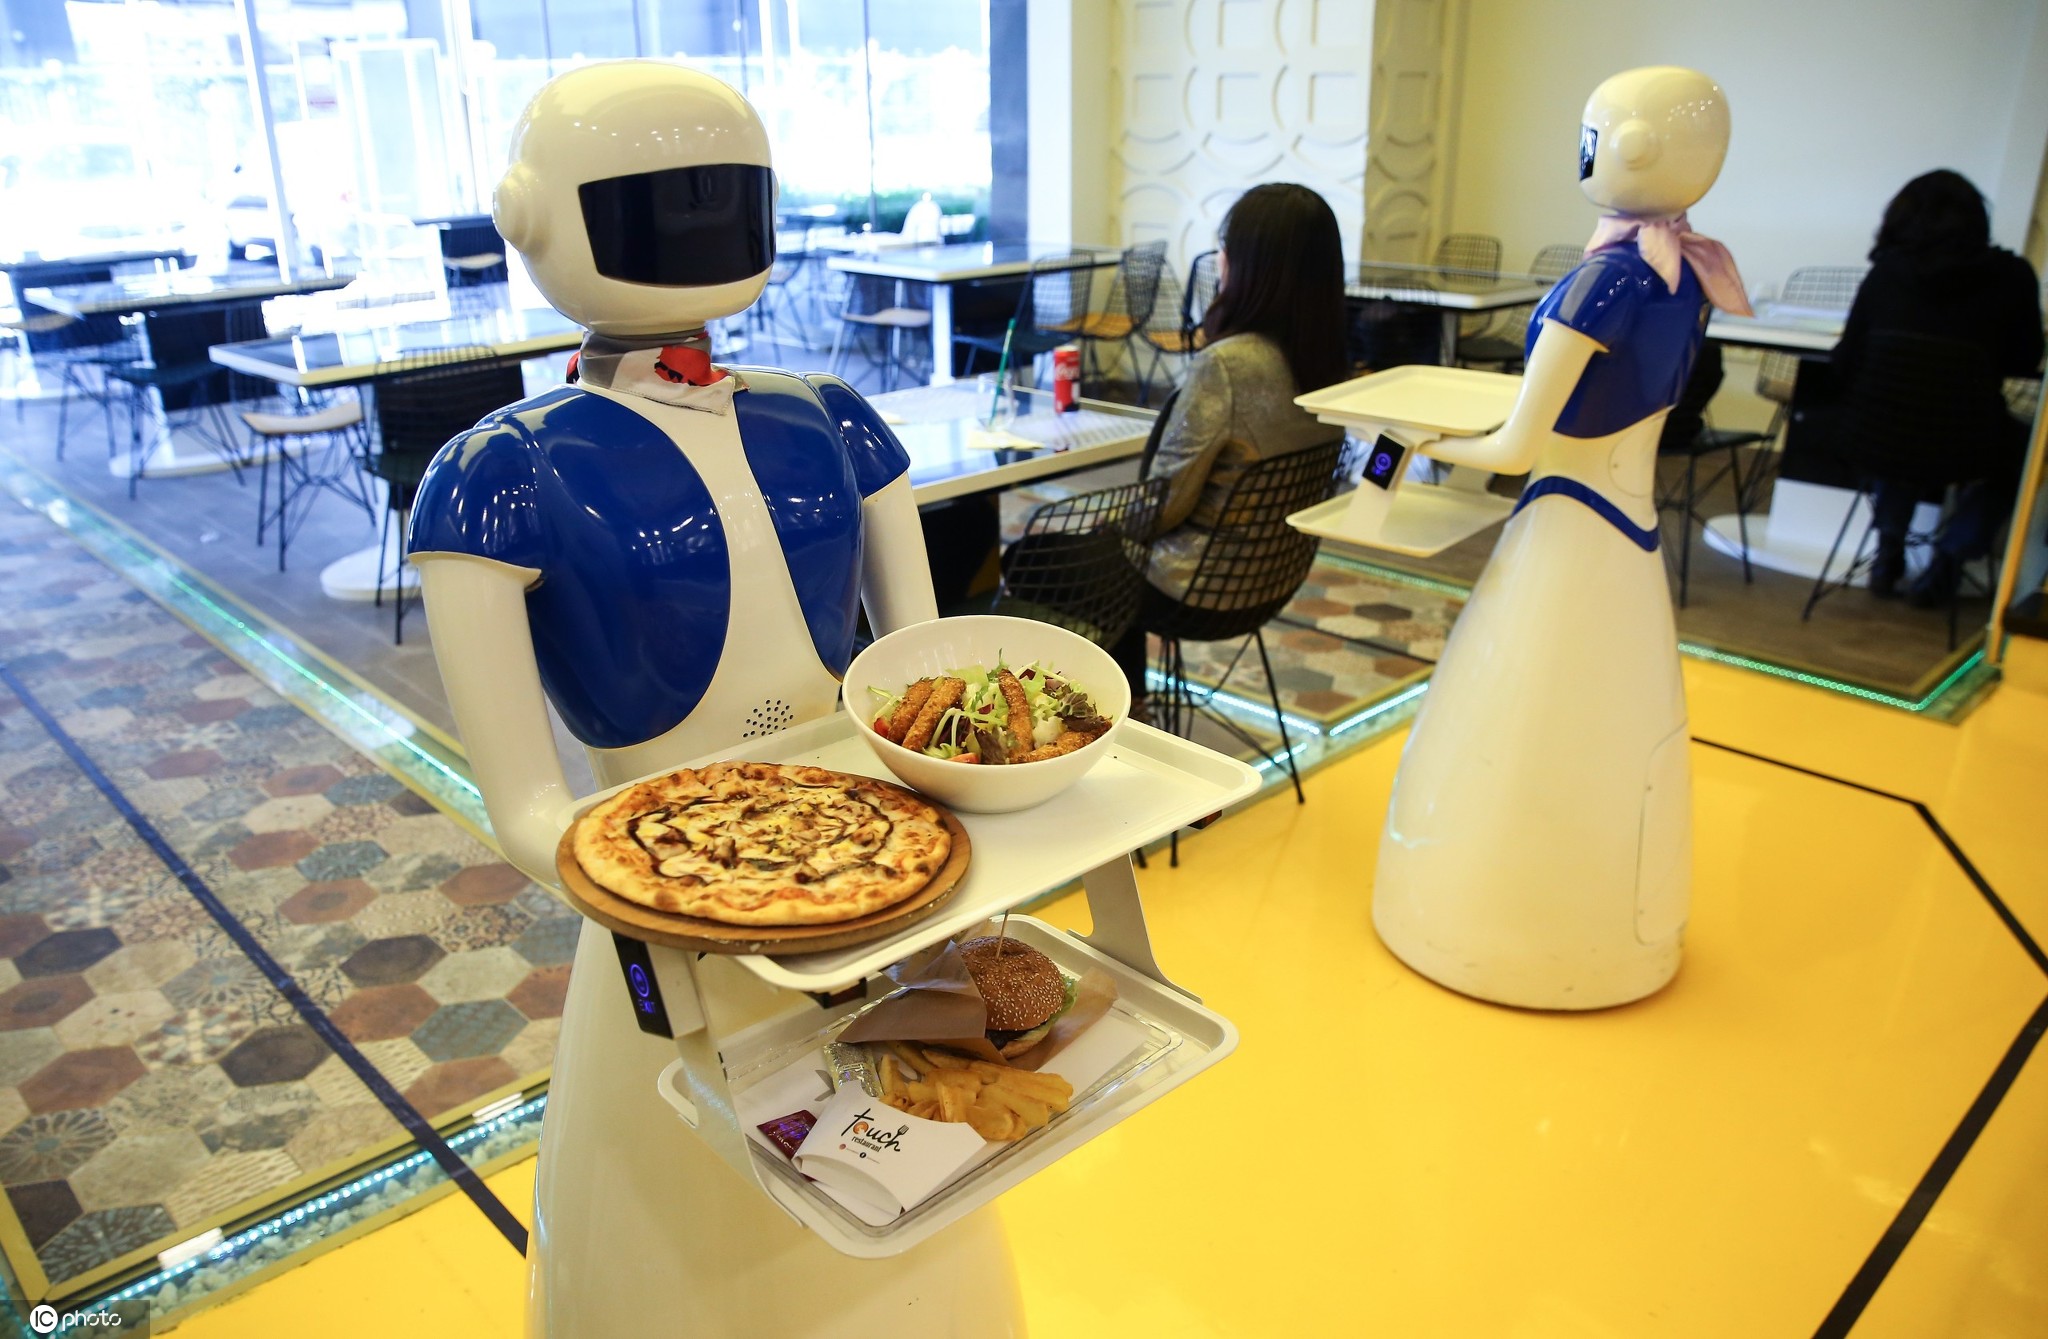 会做饭能搬运还可陪伴 越来越智能的机器人让幸福感加倍